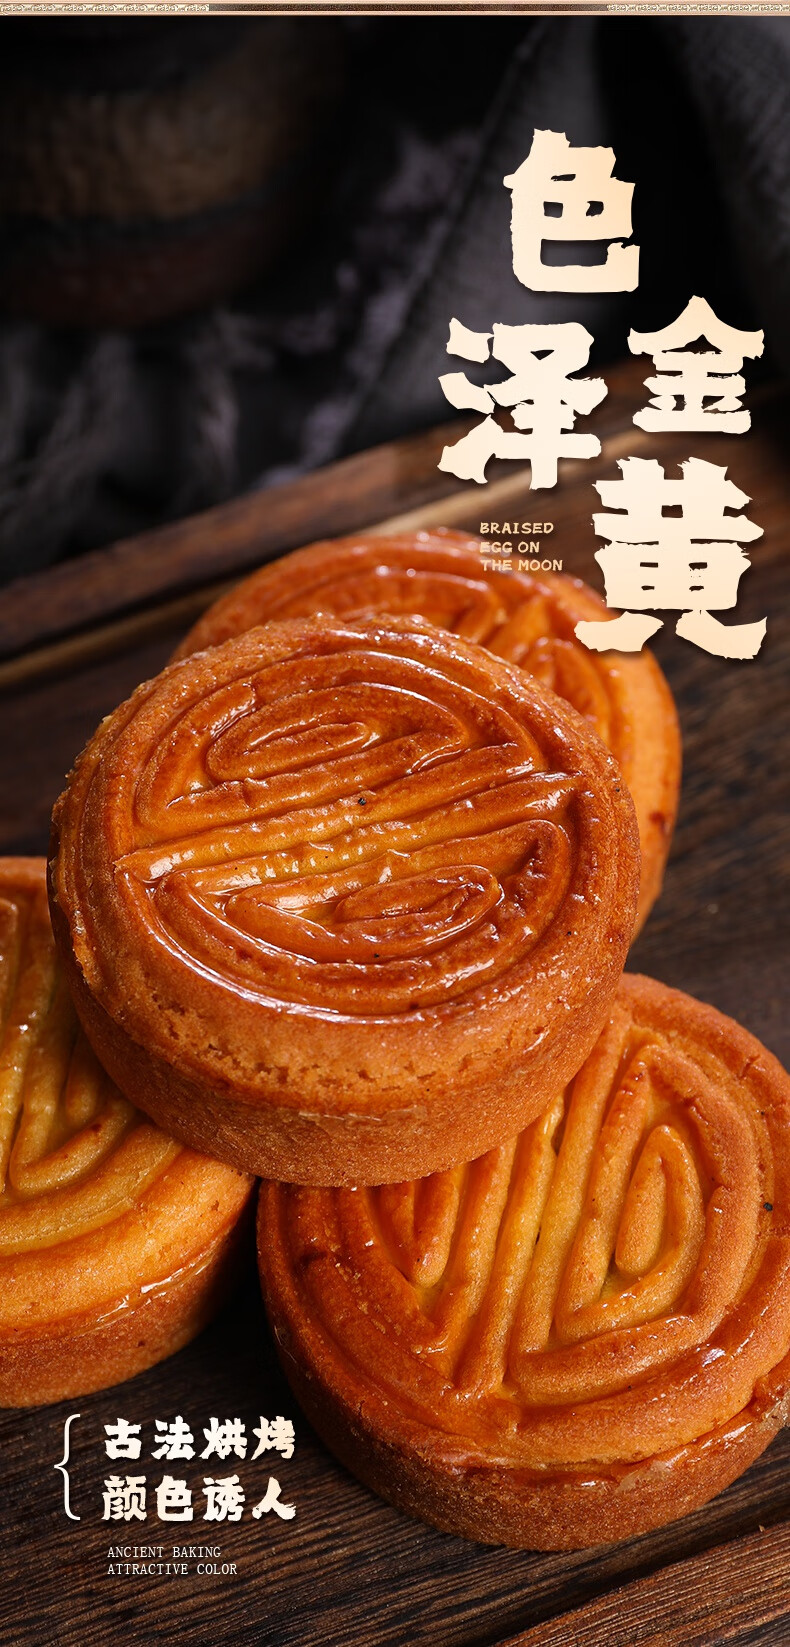 蛋月烧酥皮月饼中秋节五仁月饼老式传统手工黑芝麻红豆沙椒盐蜜枣 1斤